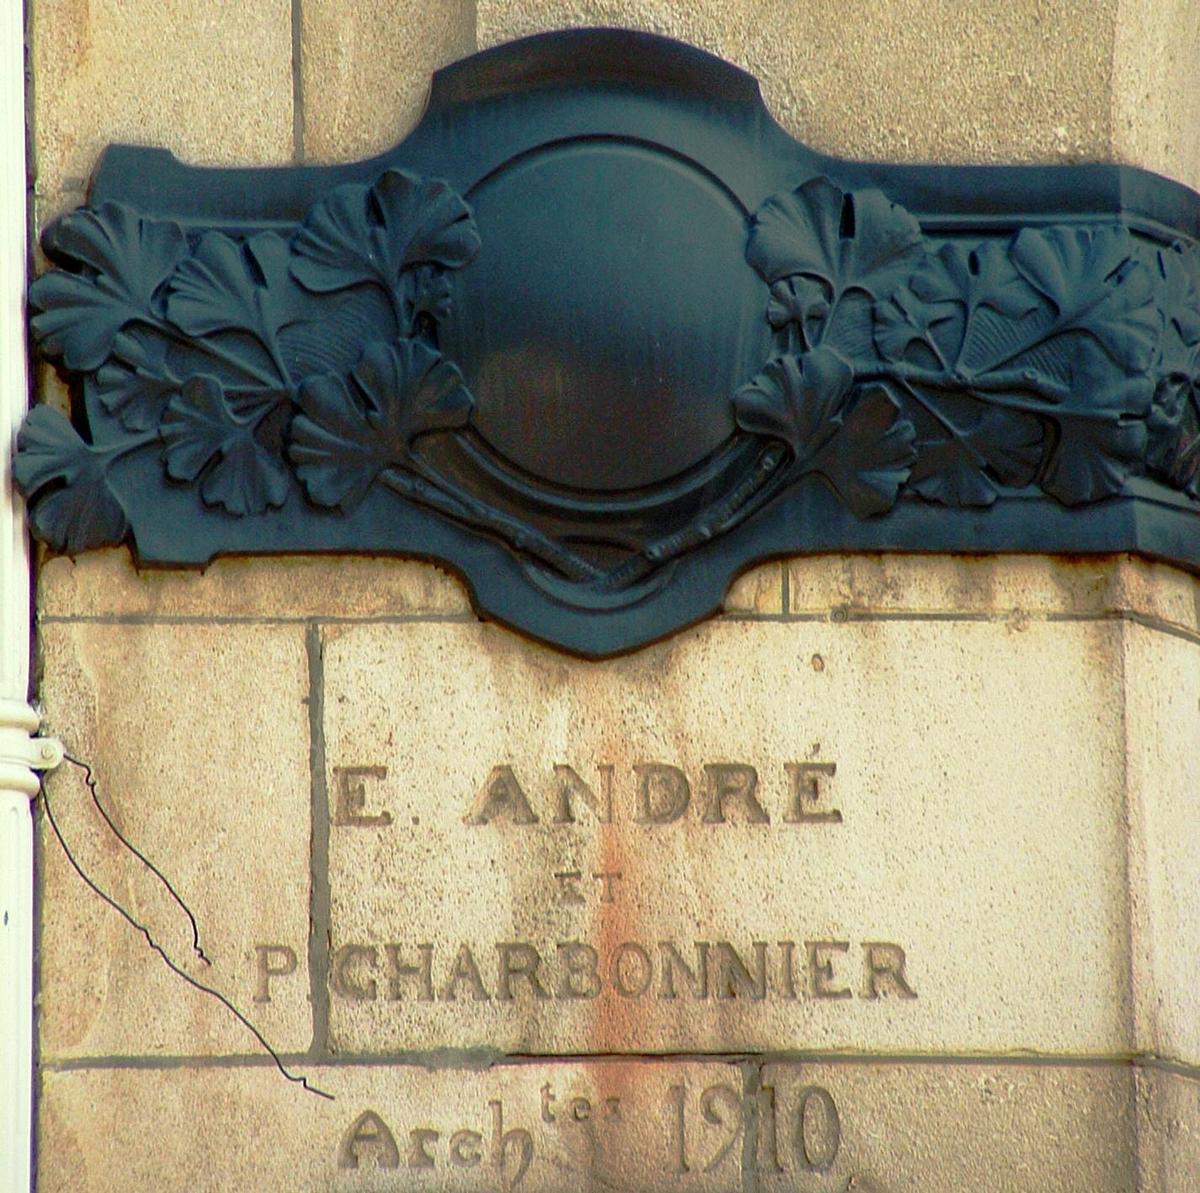 Nancy Art Nouveau - Ancienne banque Charles Renauld (actuellement BNP) - 1910 - 9 rue Chanzy - Signatures des architectes 